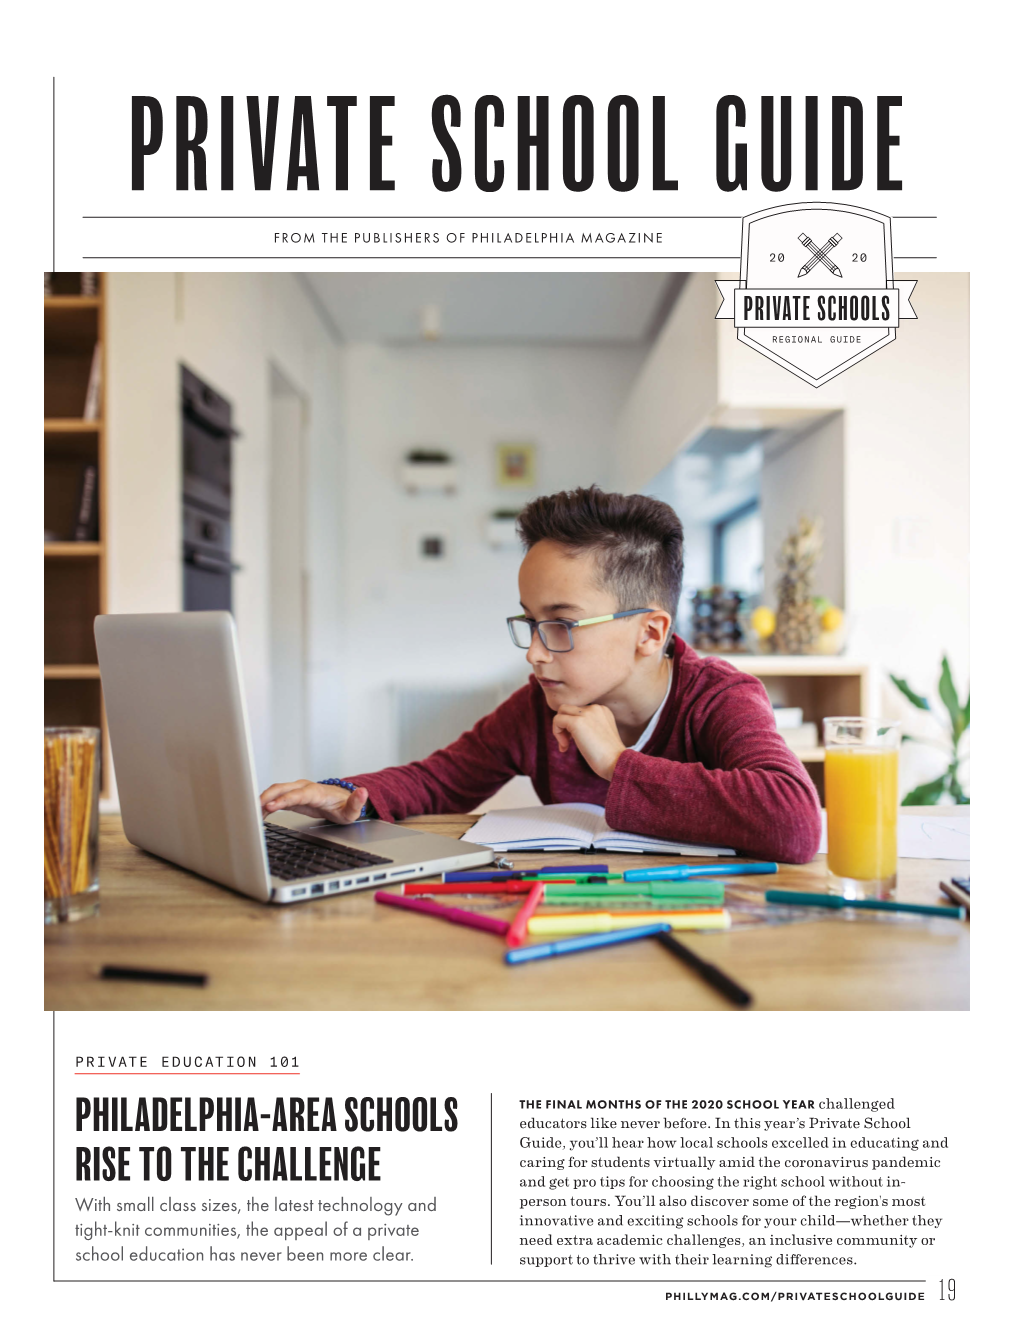 Philadelphia-Area Schools Rise to the Challenge